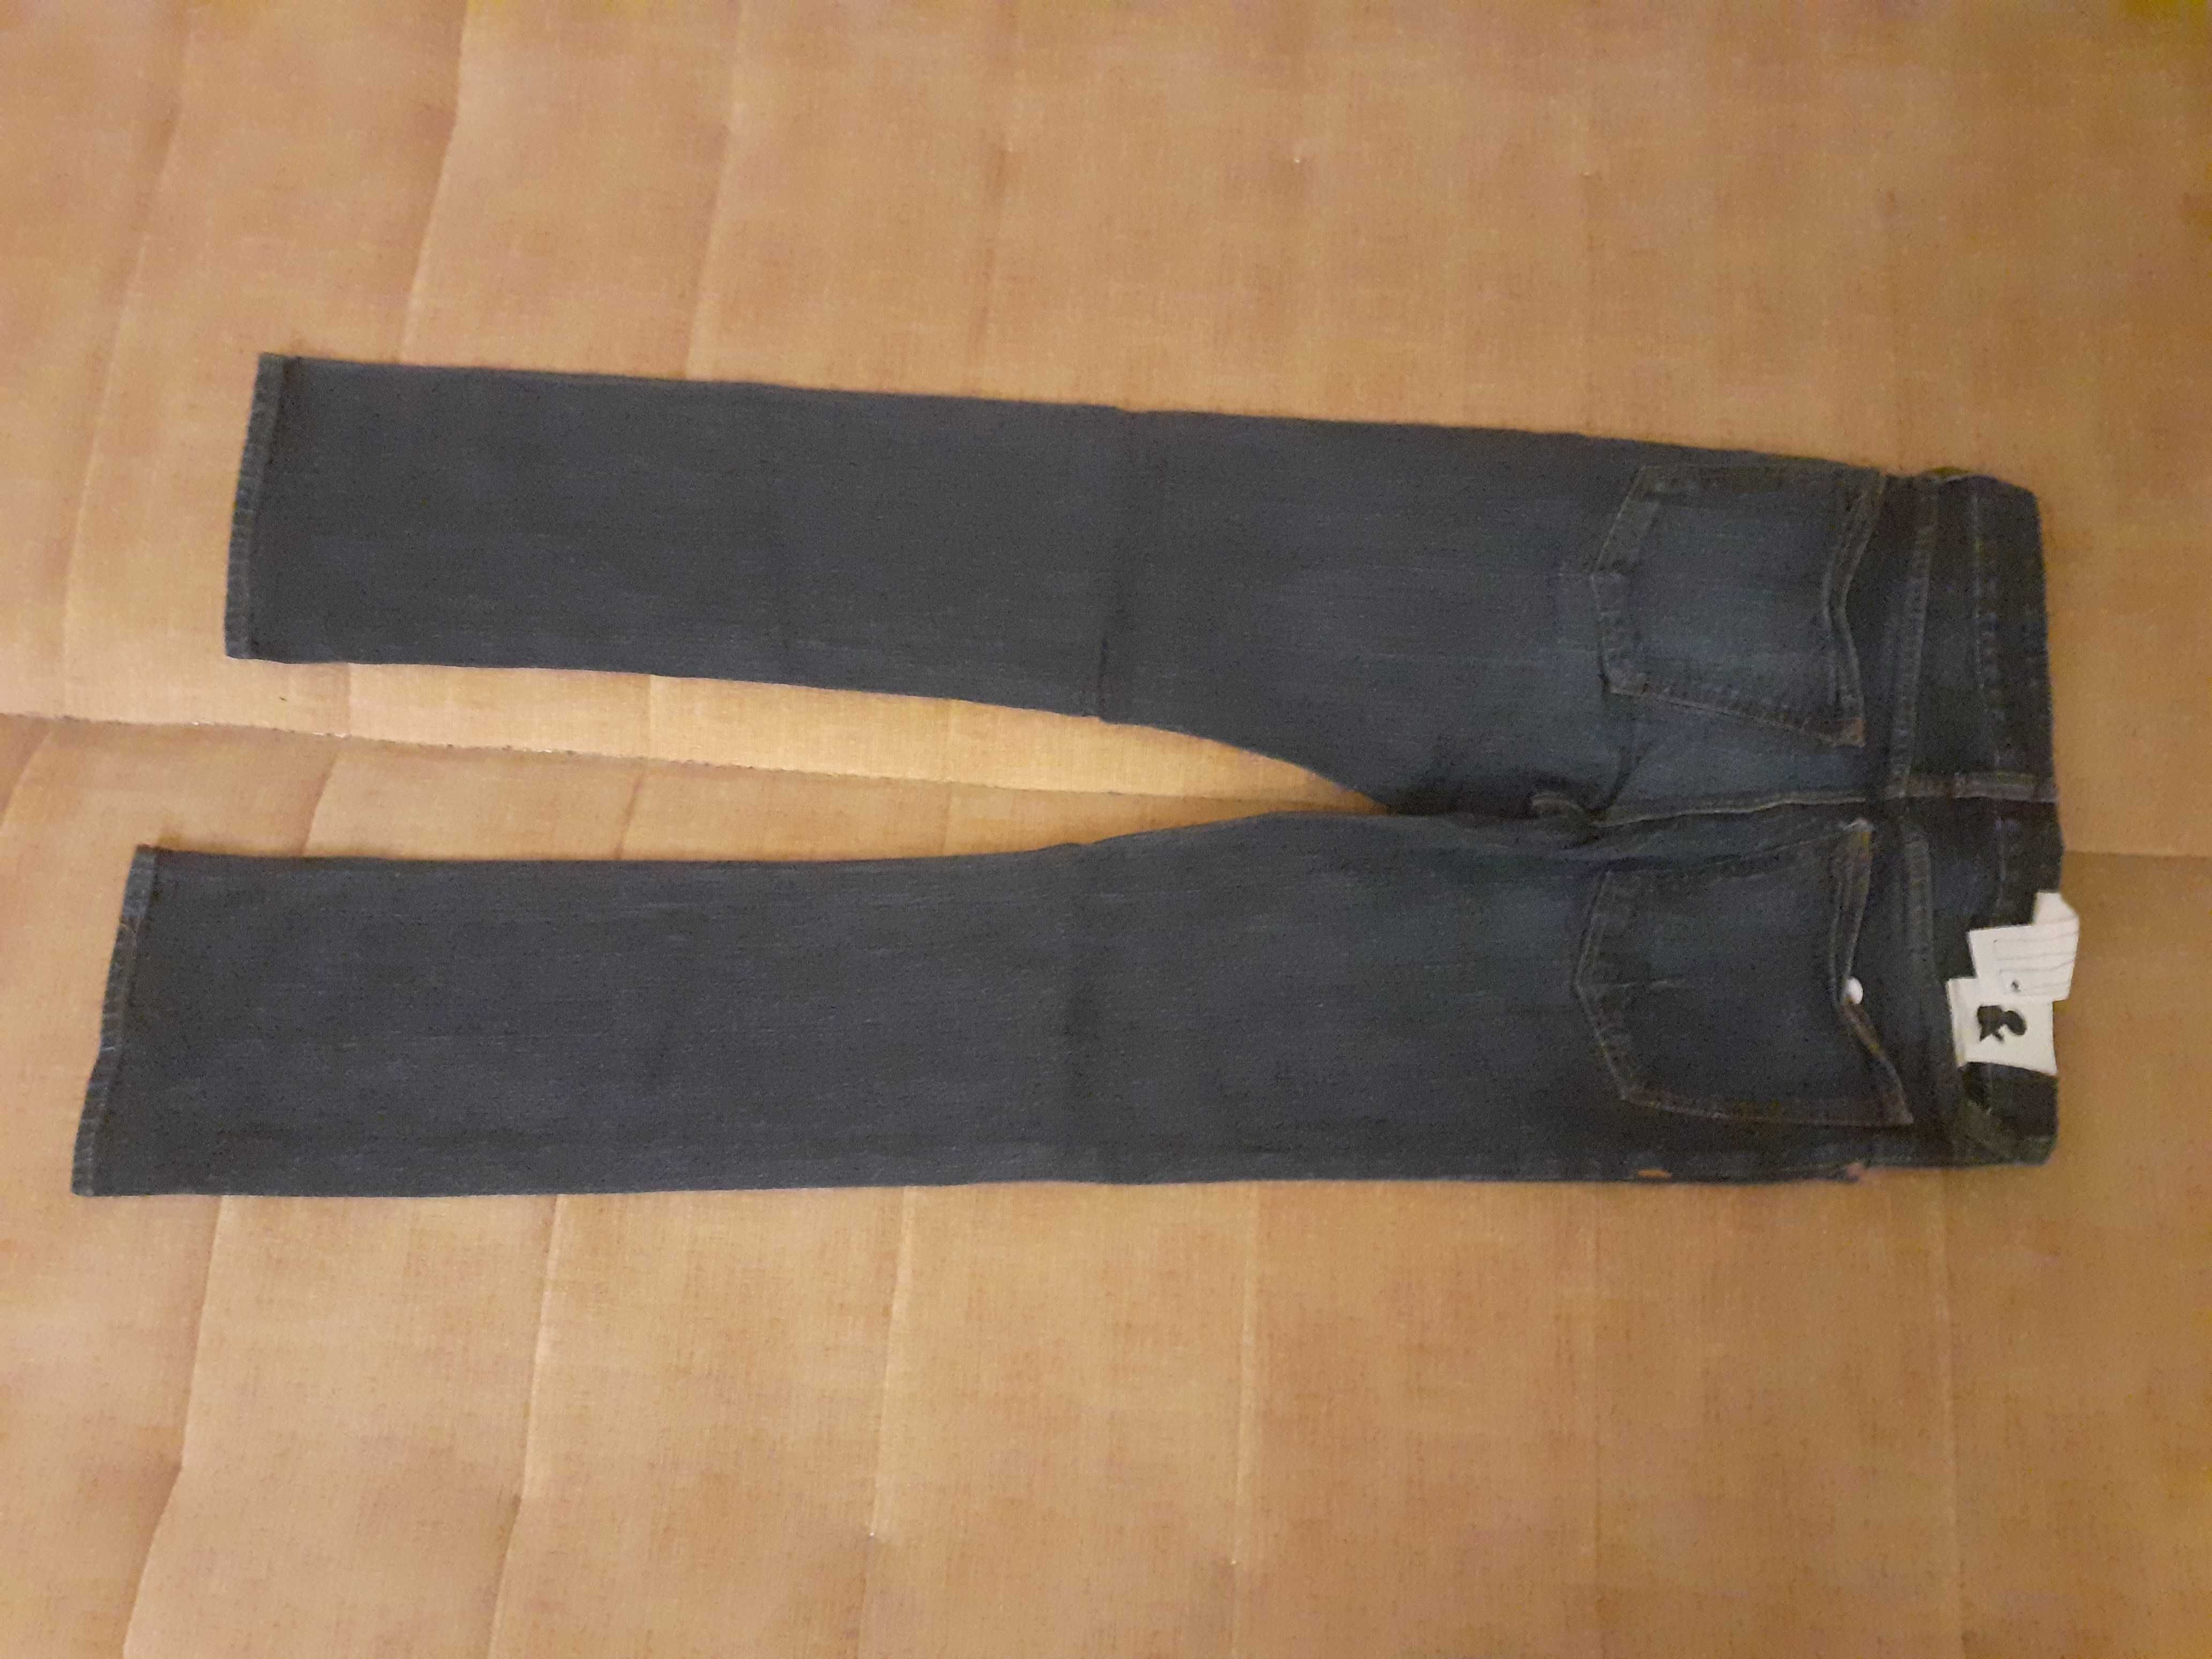 NOWE klasyczne spodnie jensowe męskie. (ROZMIAR 34/36)